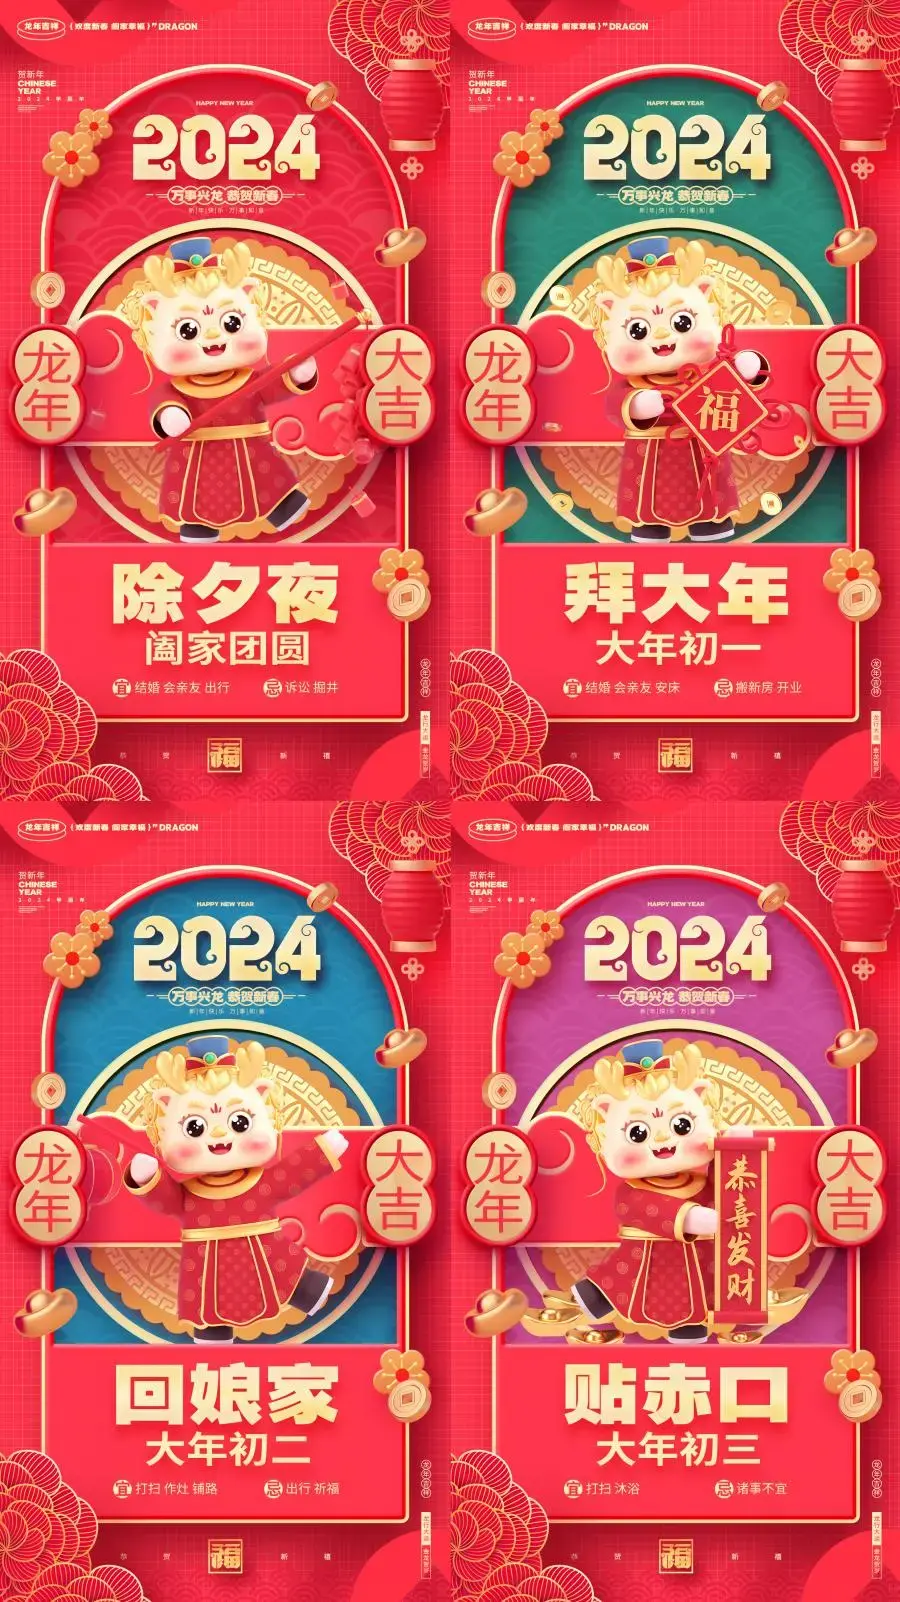 2024龙年春节新年大年初一拜年除夕年俗系列海报PSD设计素材模板-爱设计爱分享c